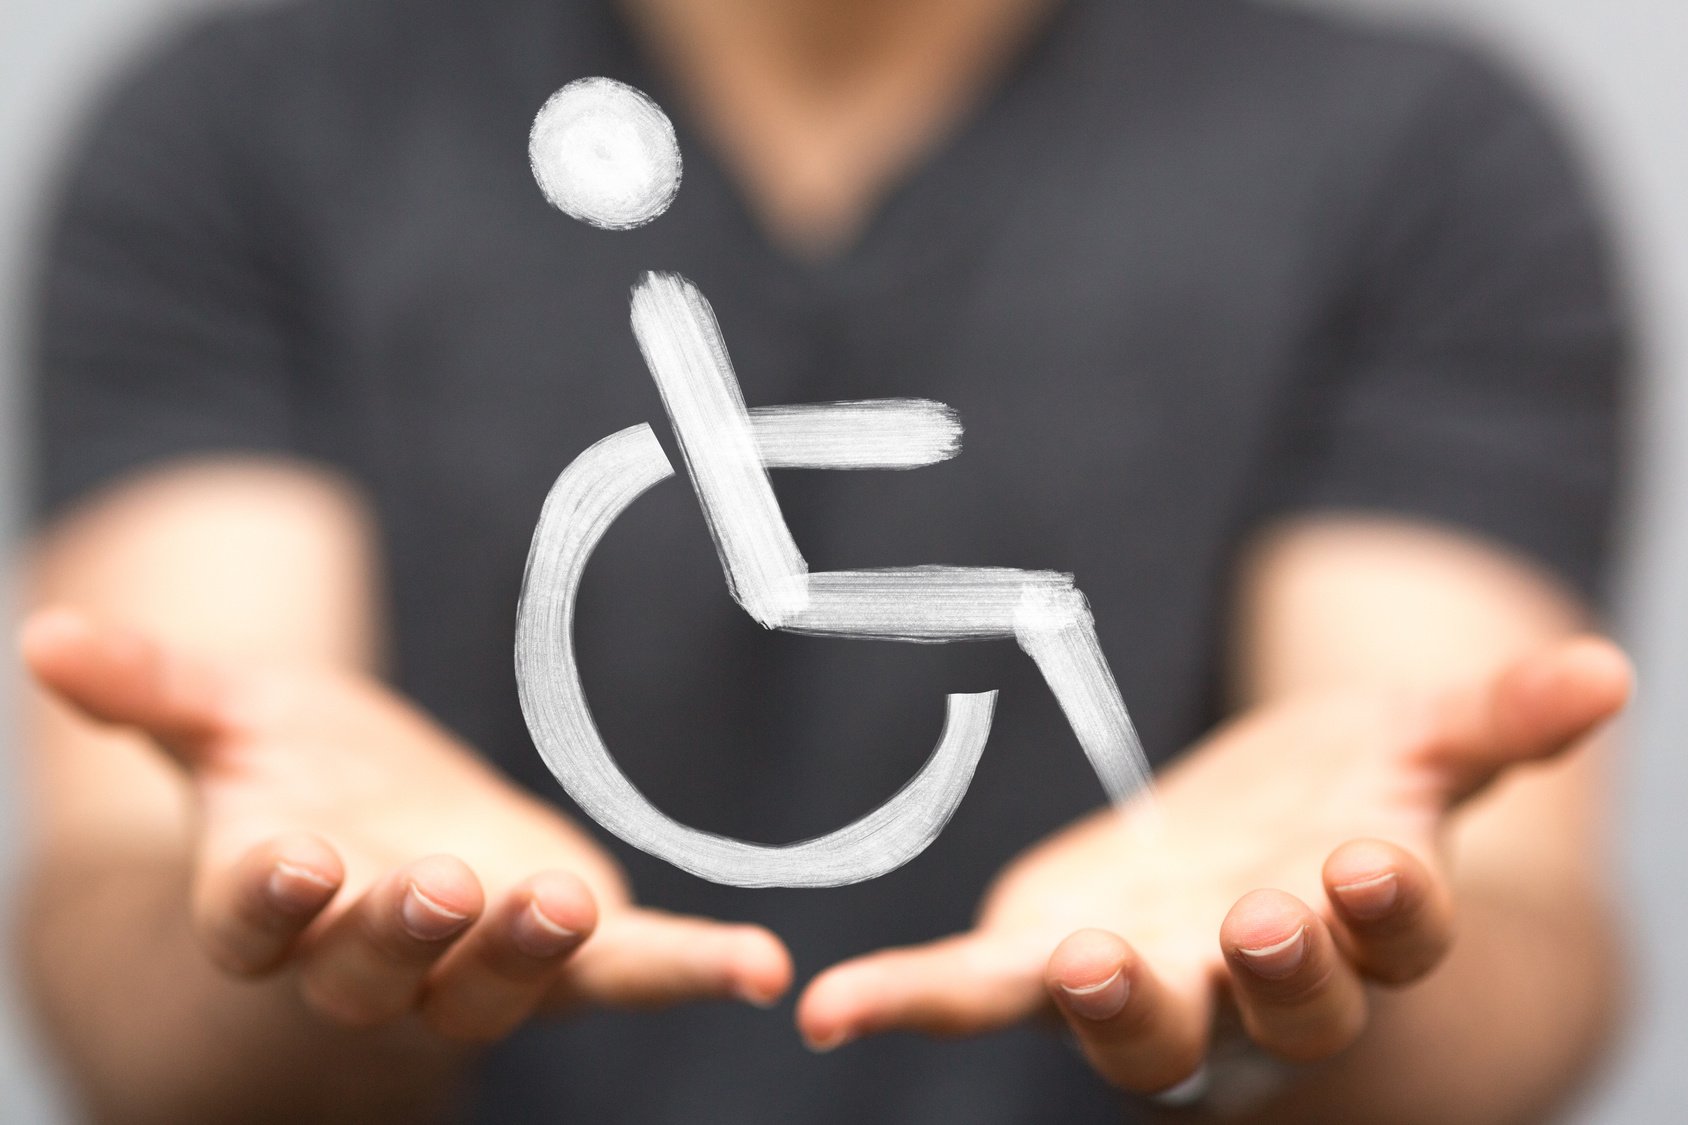 Μιχαηλίδου: Το Νοέμβριο η ψηφιακή κάρτα αναπηρίας και ο προσωπικός βοηθός στον χώρο εργασίας